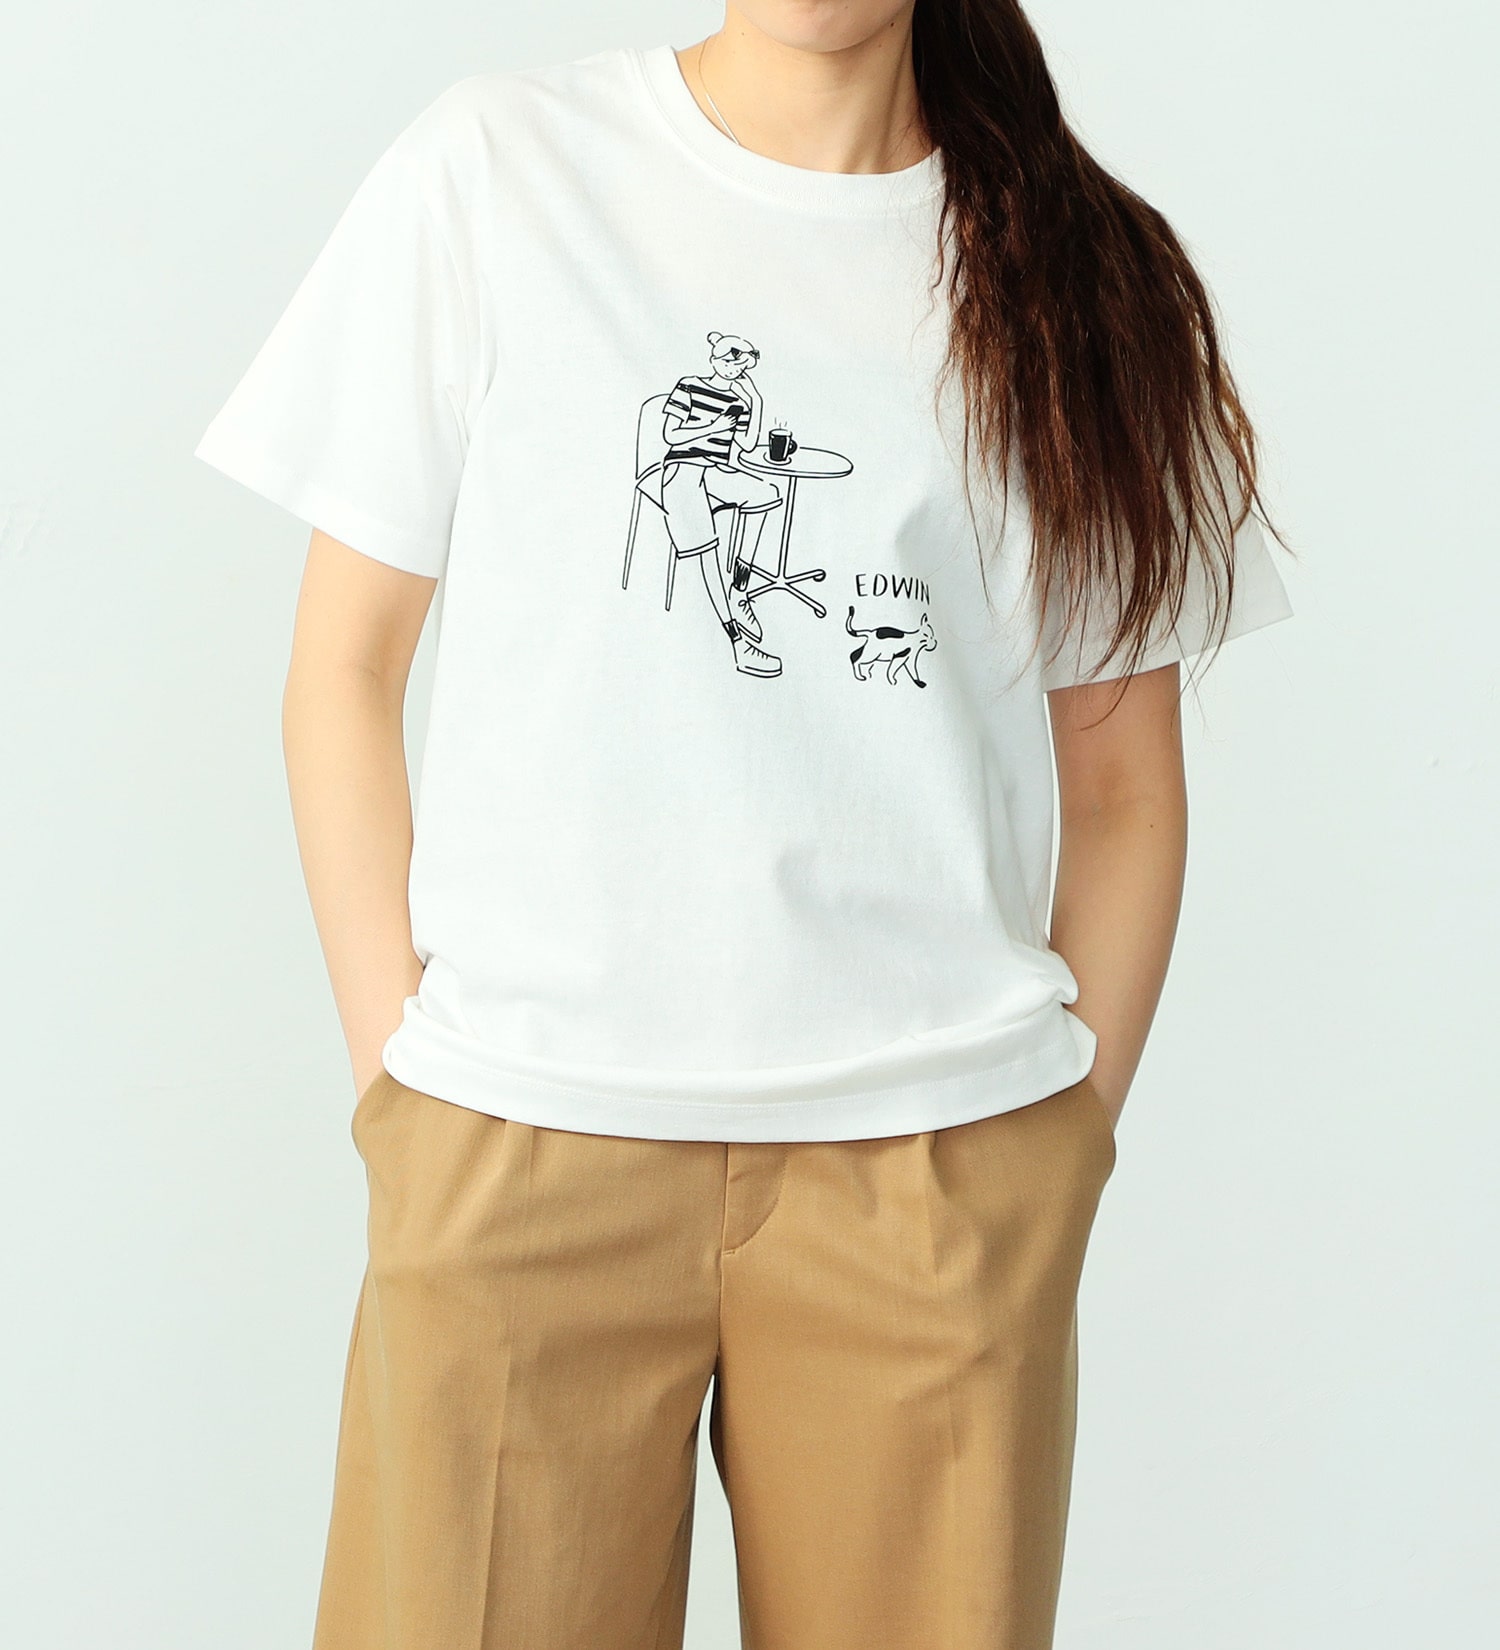 EDWIN(エドウイン)のイラストプリントTシャツ【アウトレット店舗・WEB限定】|トップス/Tシャツ/カットソー/レディース|ホワイト系その他